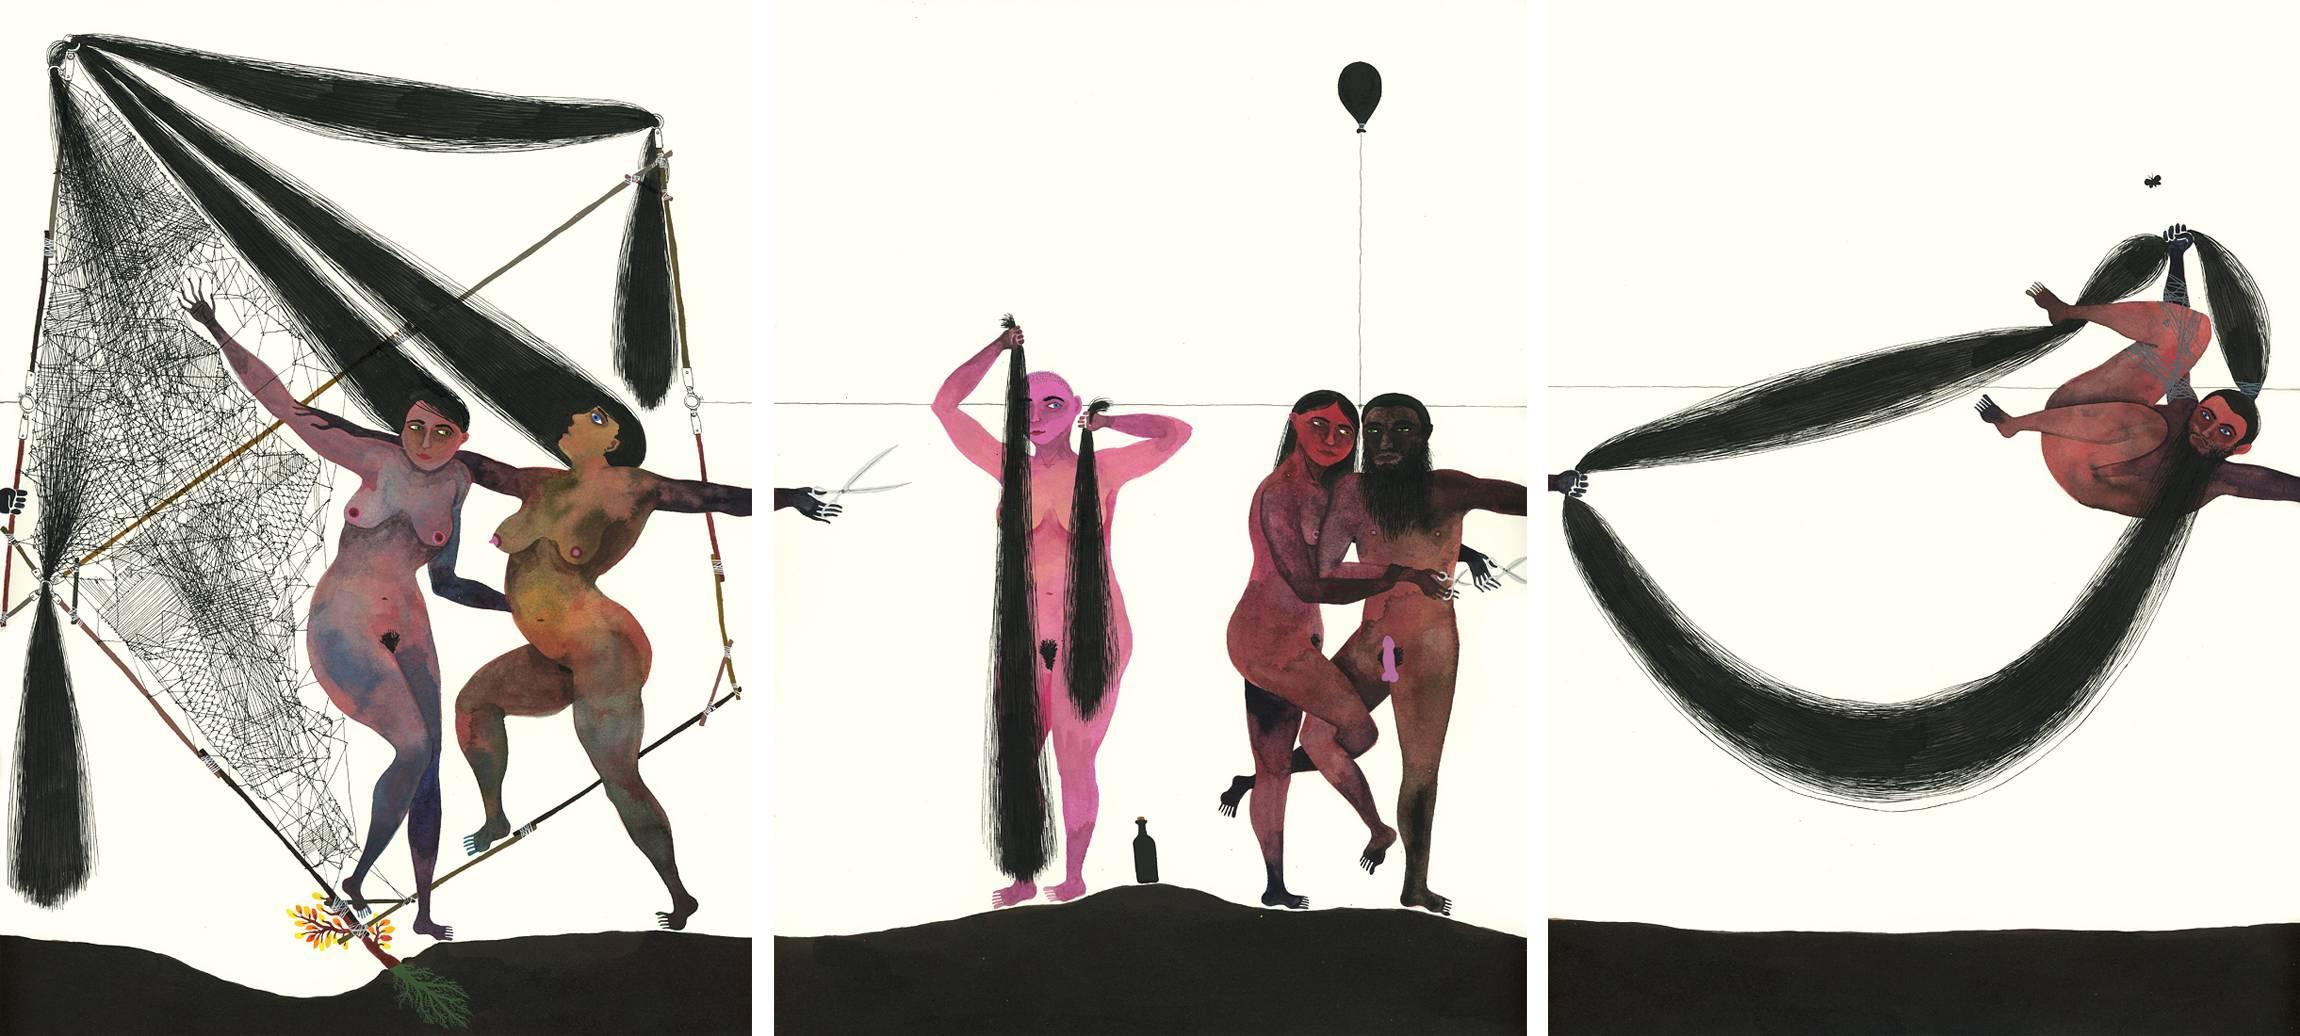 Balint Zsako Figurative Art - Modern Dance Triptych, Series 2, #6, #24, #12